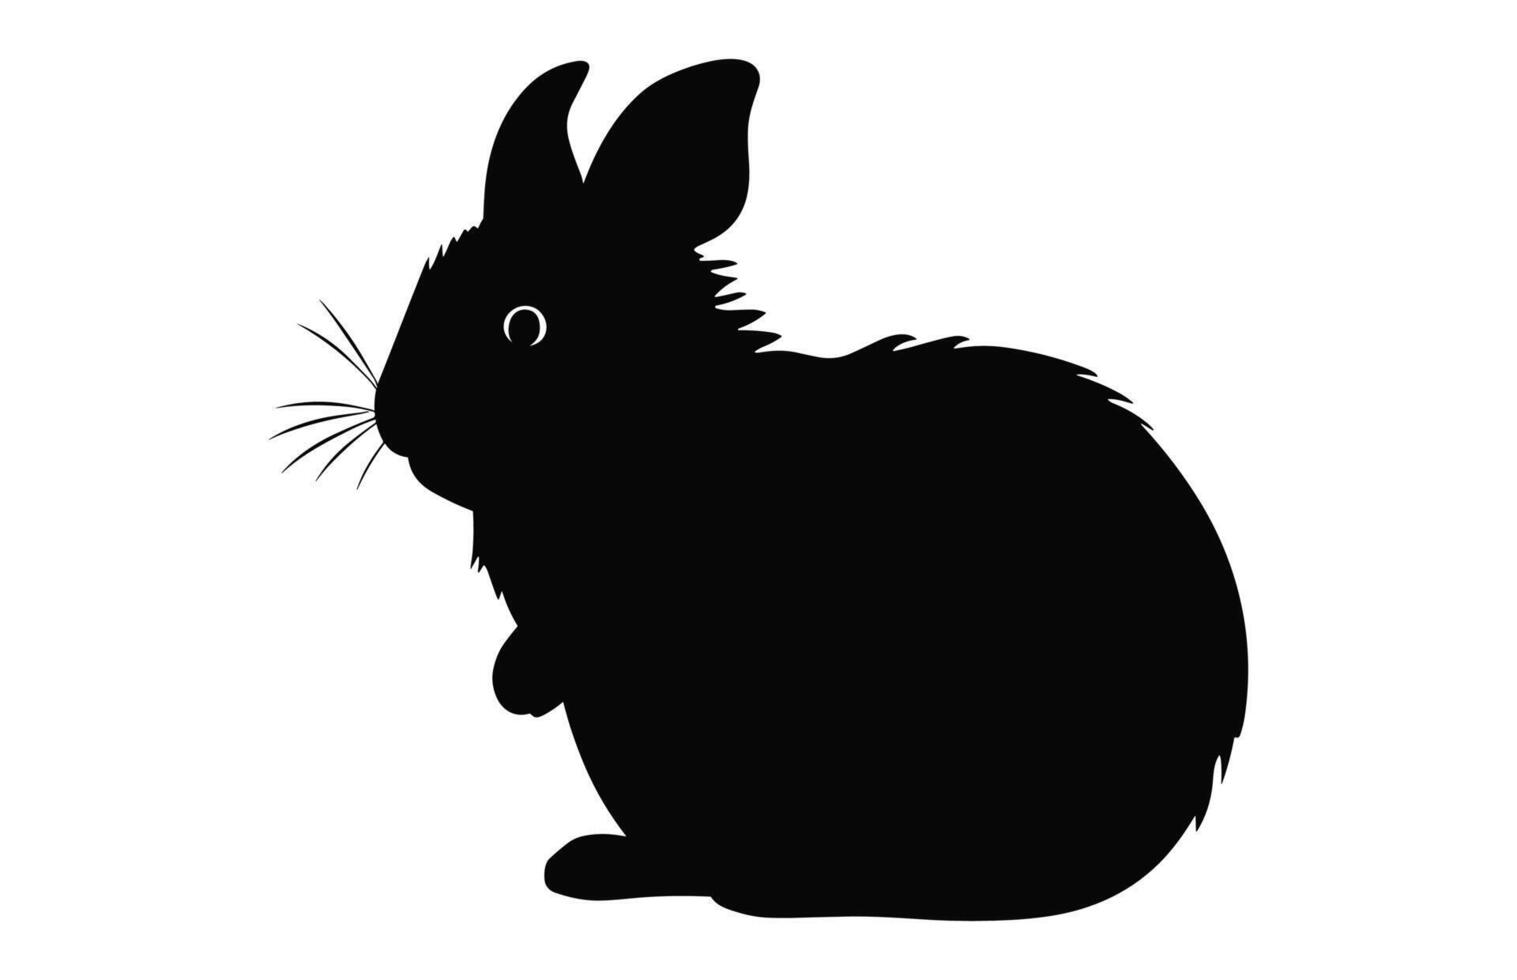 chinchilla animal silhouette vecteur isolé sur une blanc arrière-plan, hamster noir clipart